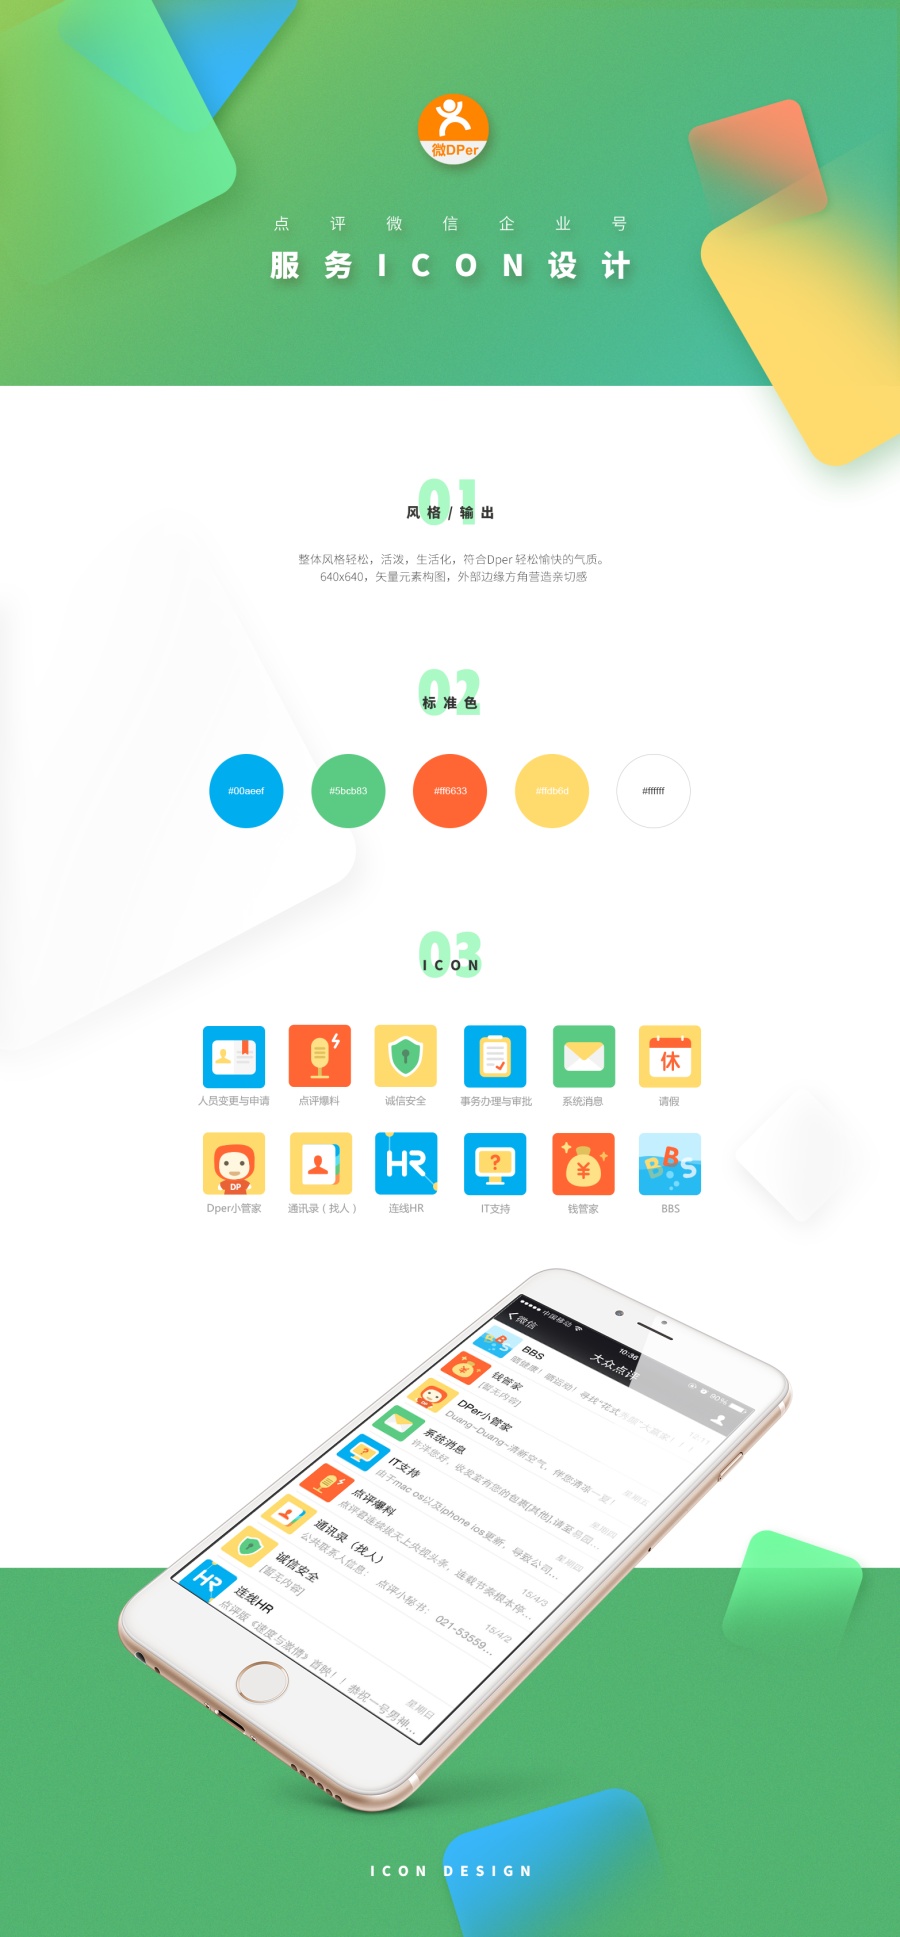 大众点评微型企业号服务icon设计|图标|GUI|LB